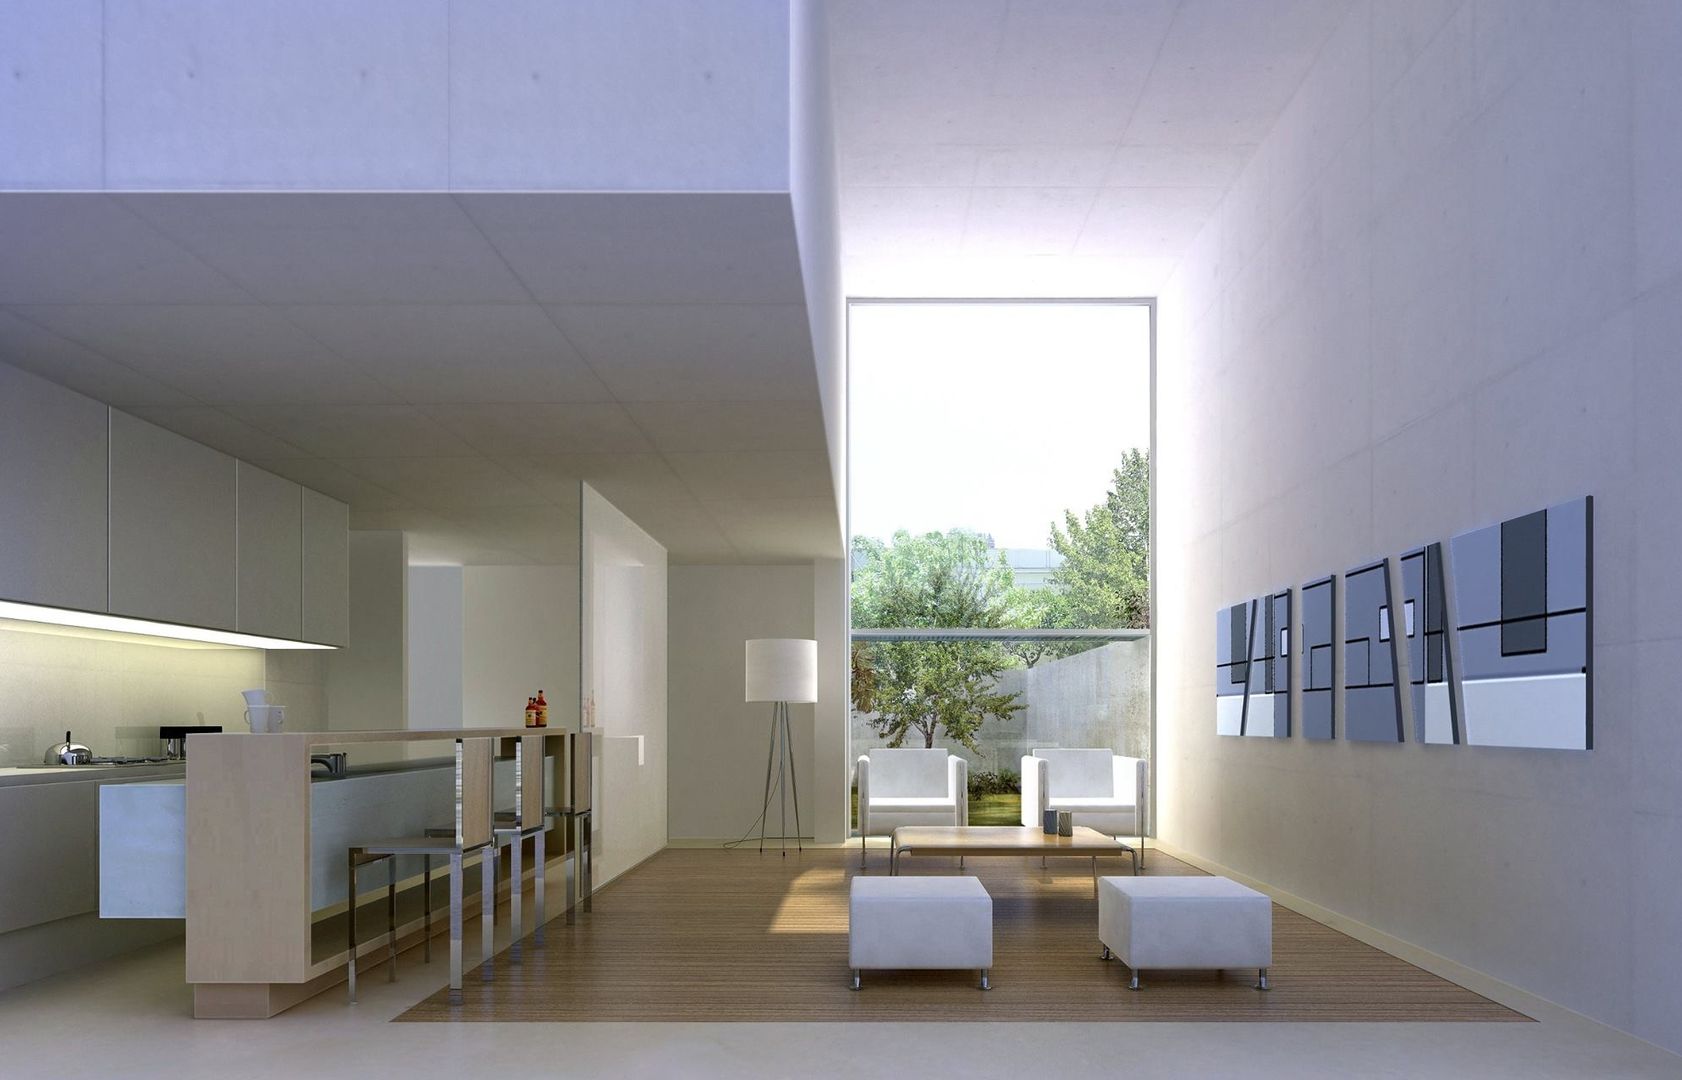 Duplex, MODULUS ARQUITECTURA MODULUS ARQUITECTURA Salones de estilo minimalista